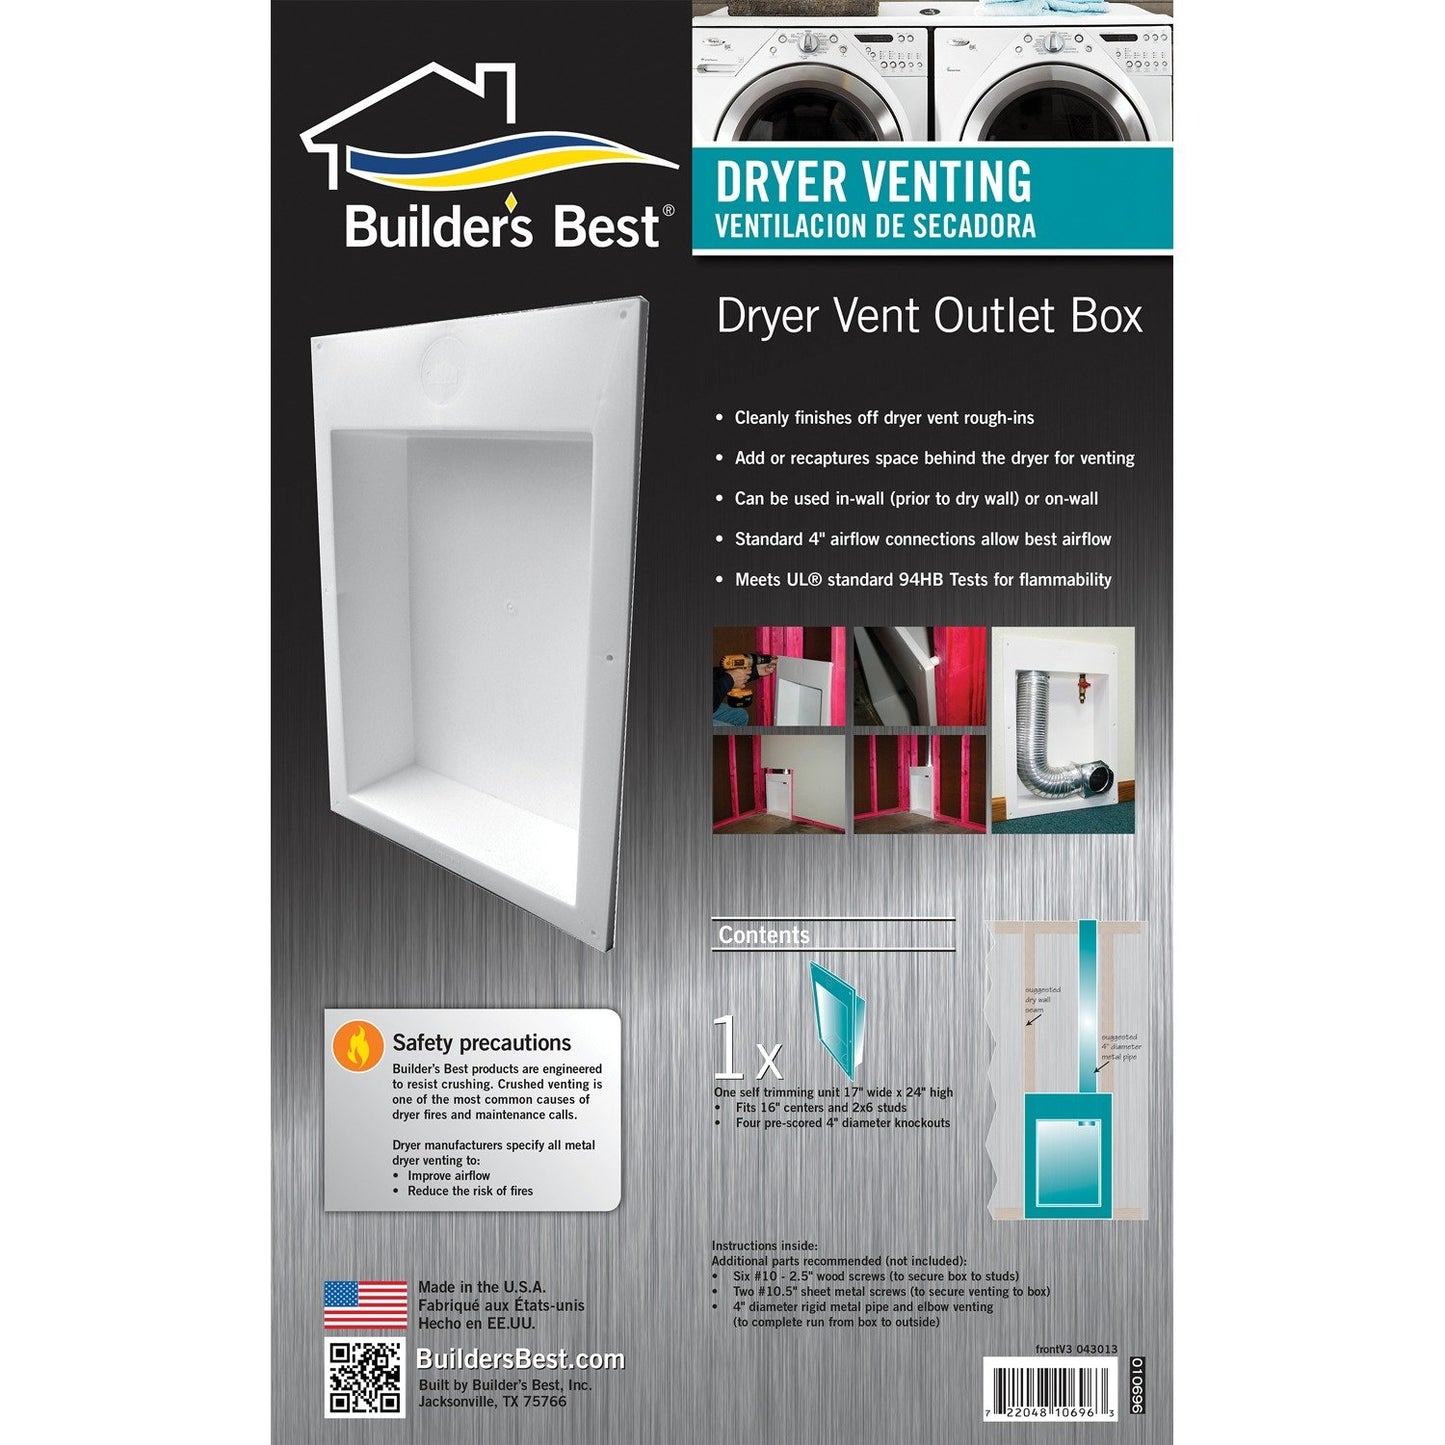 Builder's Best 110696 Saf-T-Duct® Dryer Outlet Box